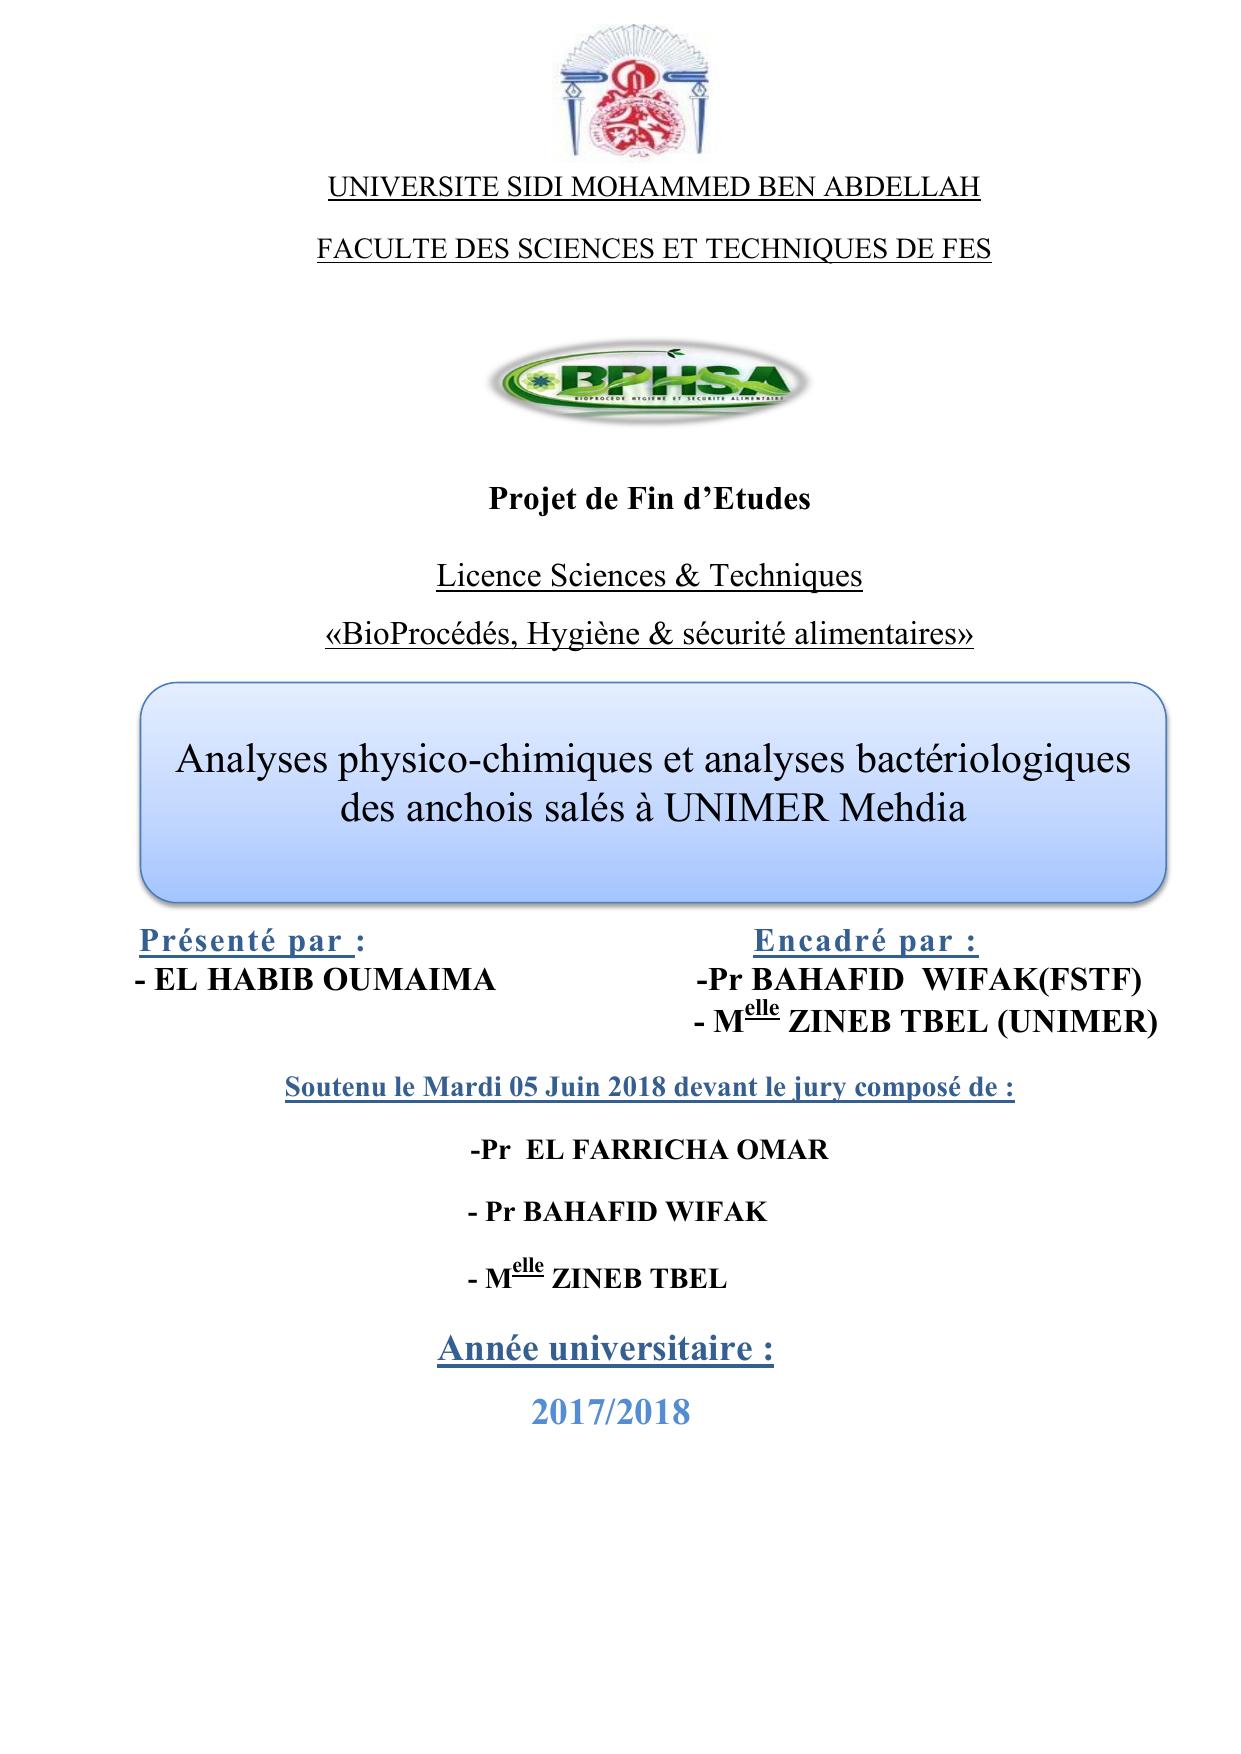 Analyses physico-chimiques et analyses bactériologiques des anchois salés à UNIMER Mehdia